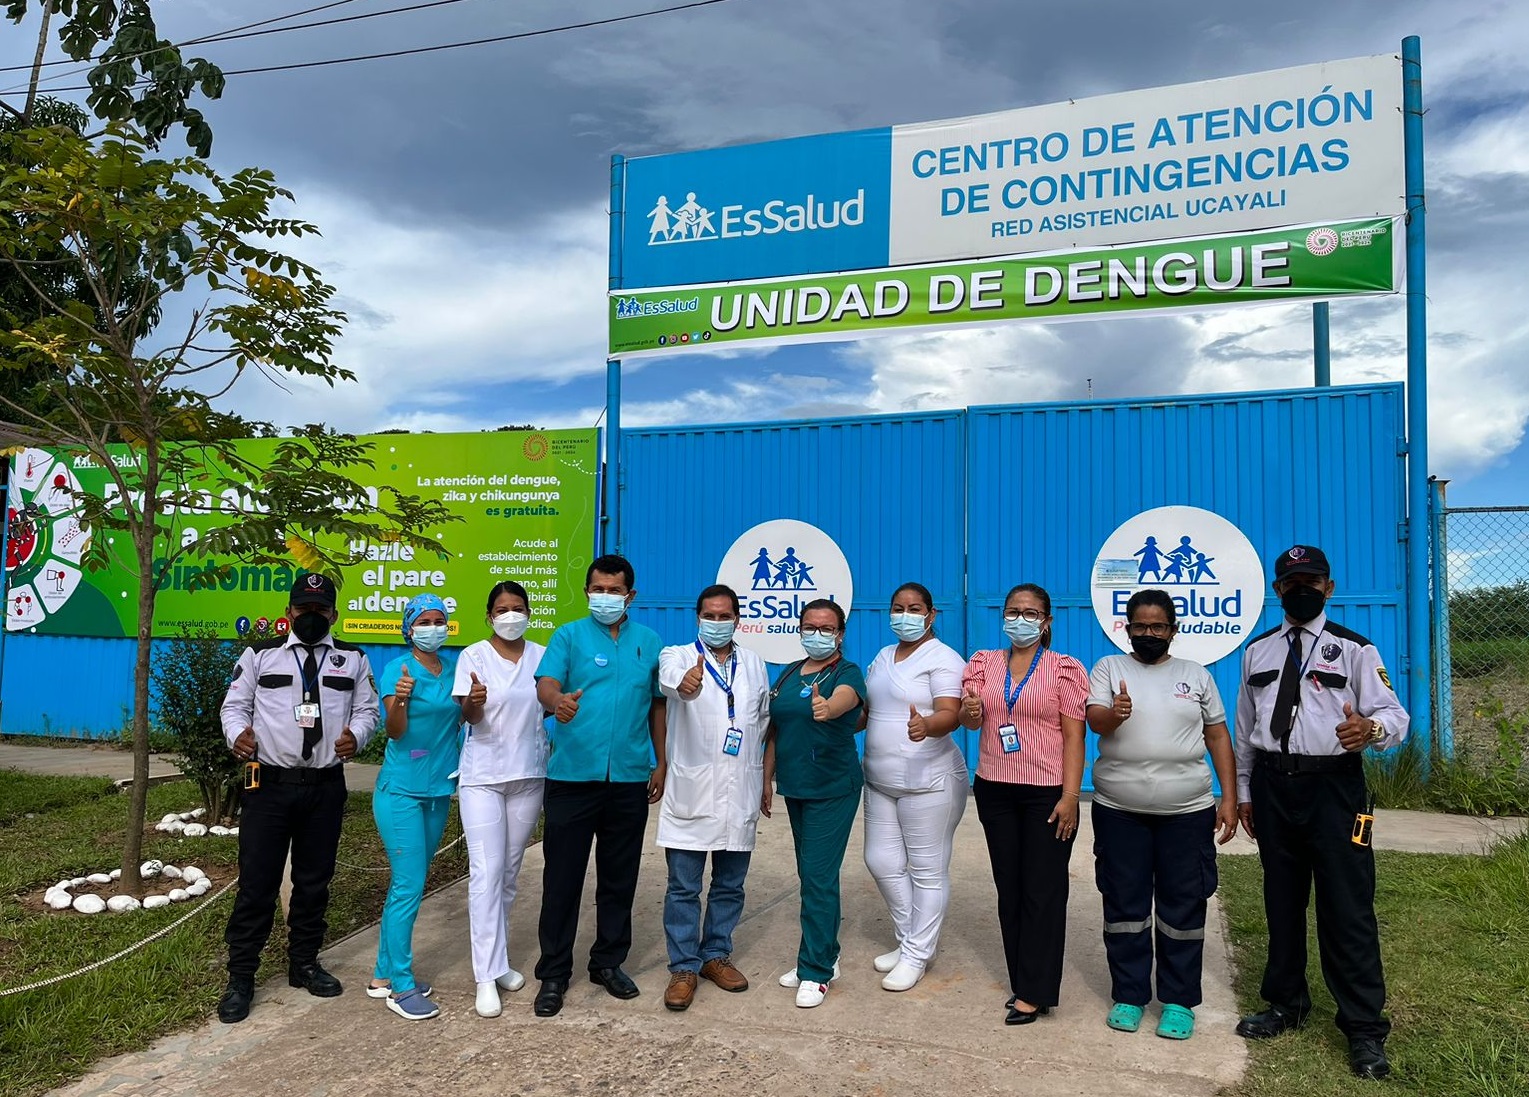 Essalud - EsSalud Ucayali implementa Unidad de Dengue para tratamiento de pacientes